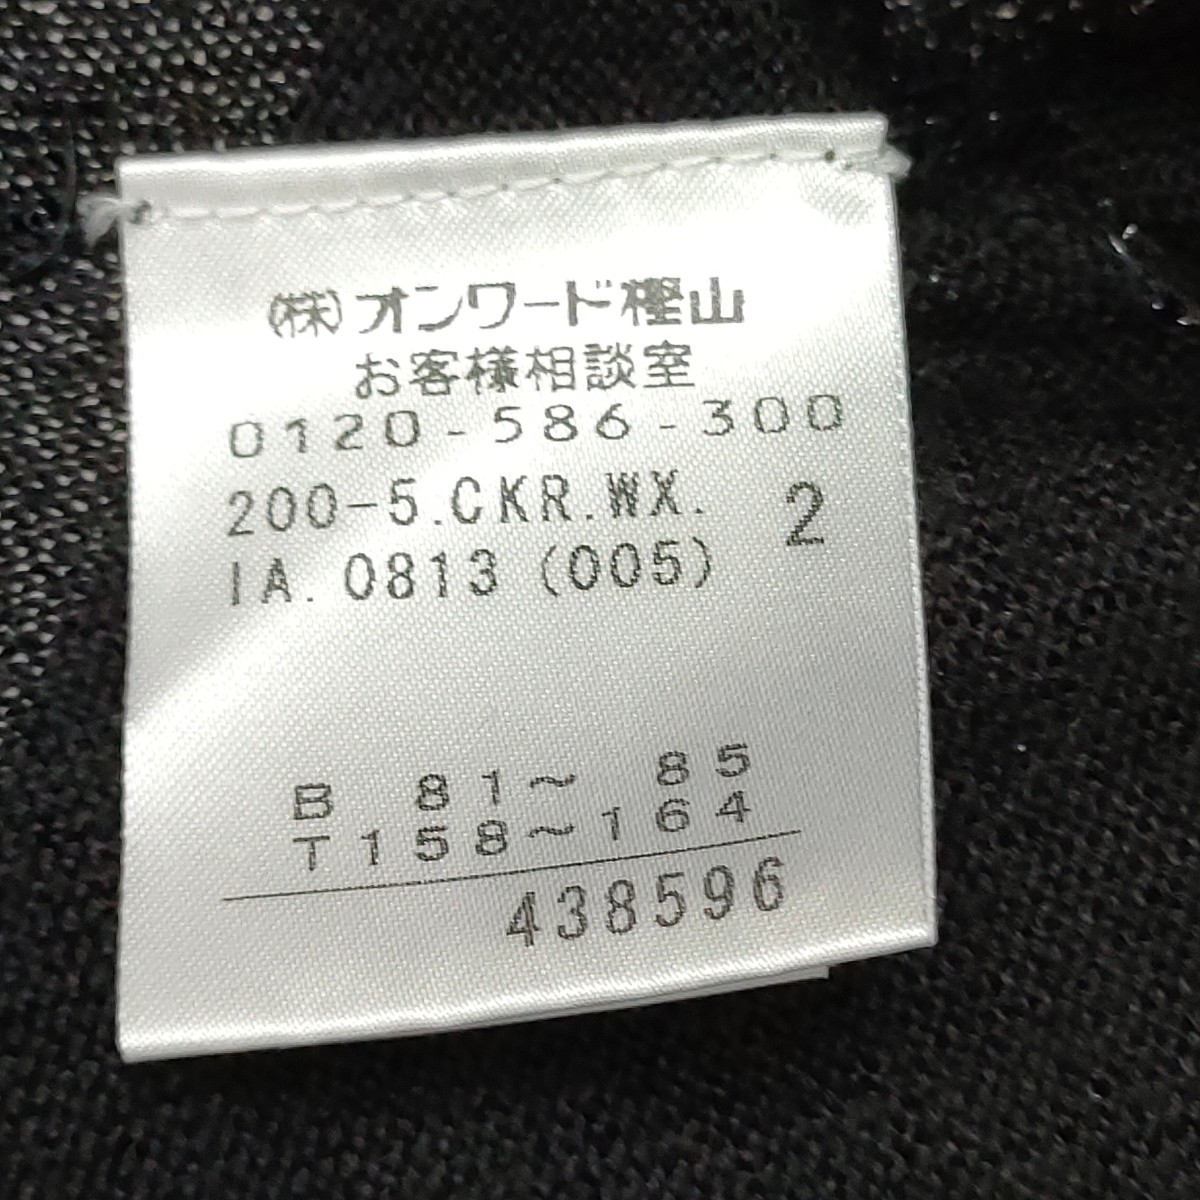  Kumikyoku / KUMIKYOKU Prier женский болеро кардиган короткий рукав перо ткань черный ламе ввод 2 размер весна летняя одежда . называется item I-2645